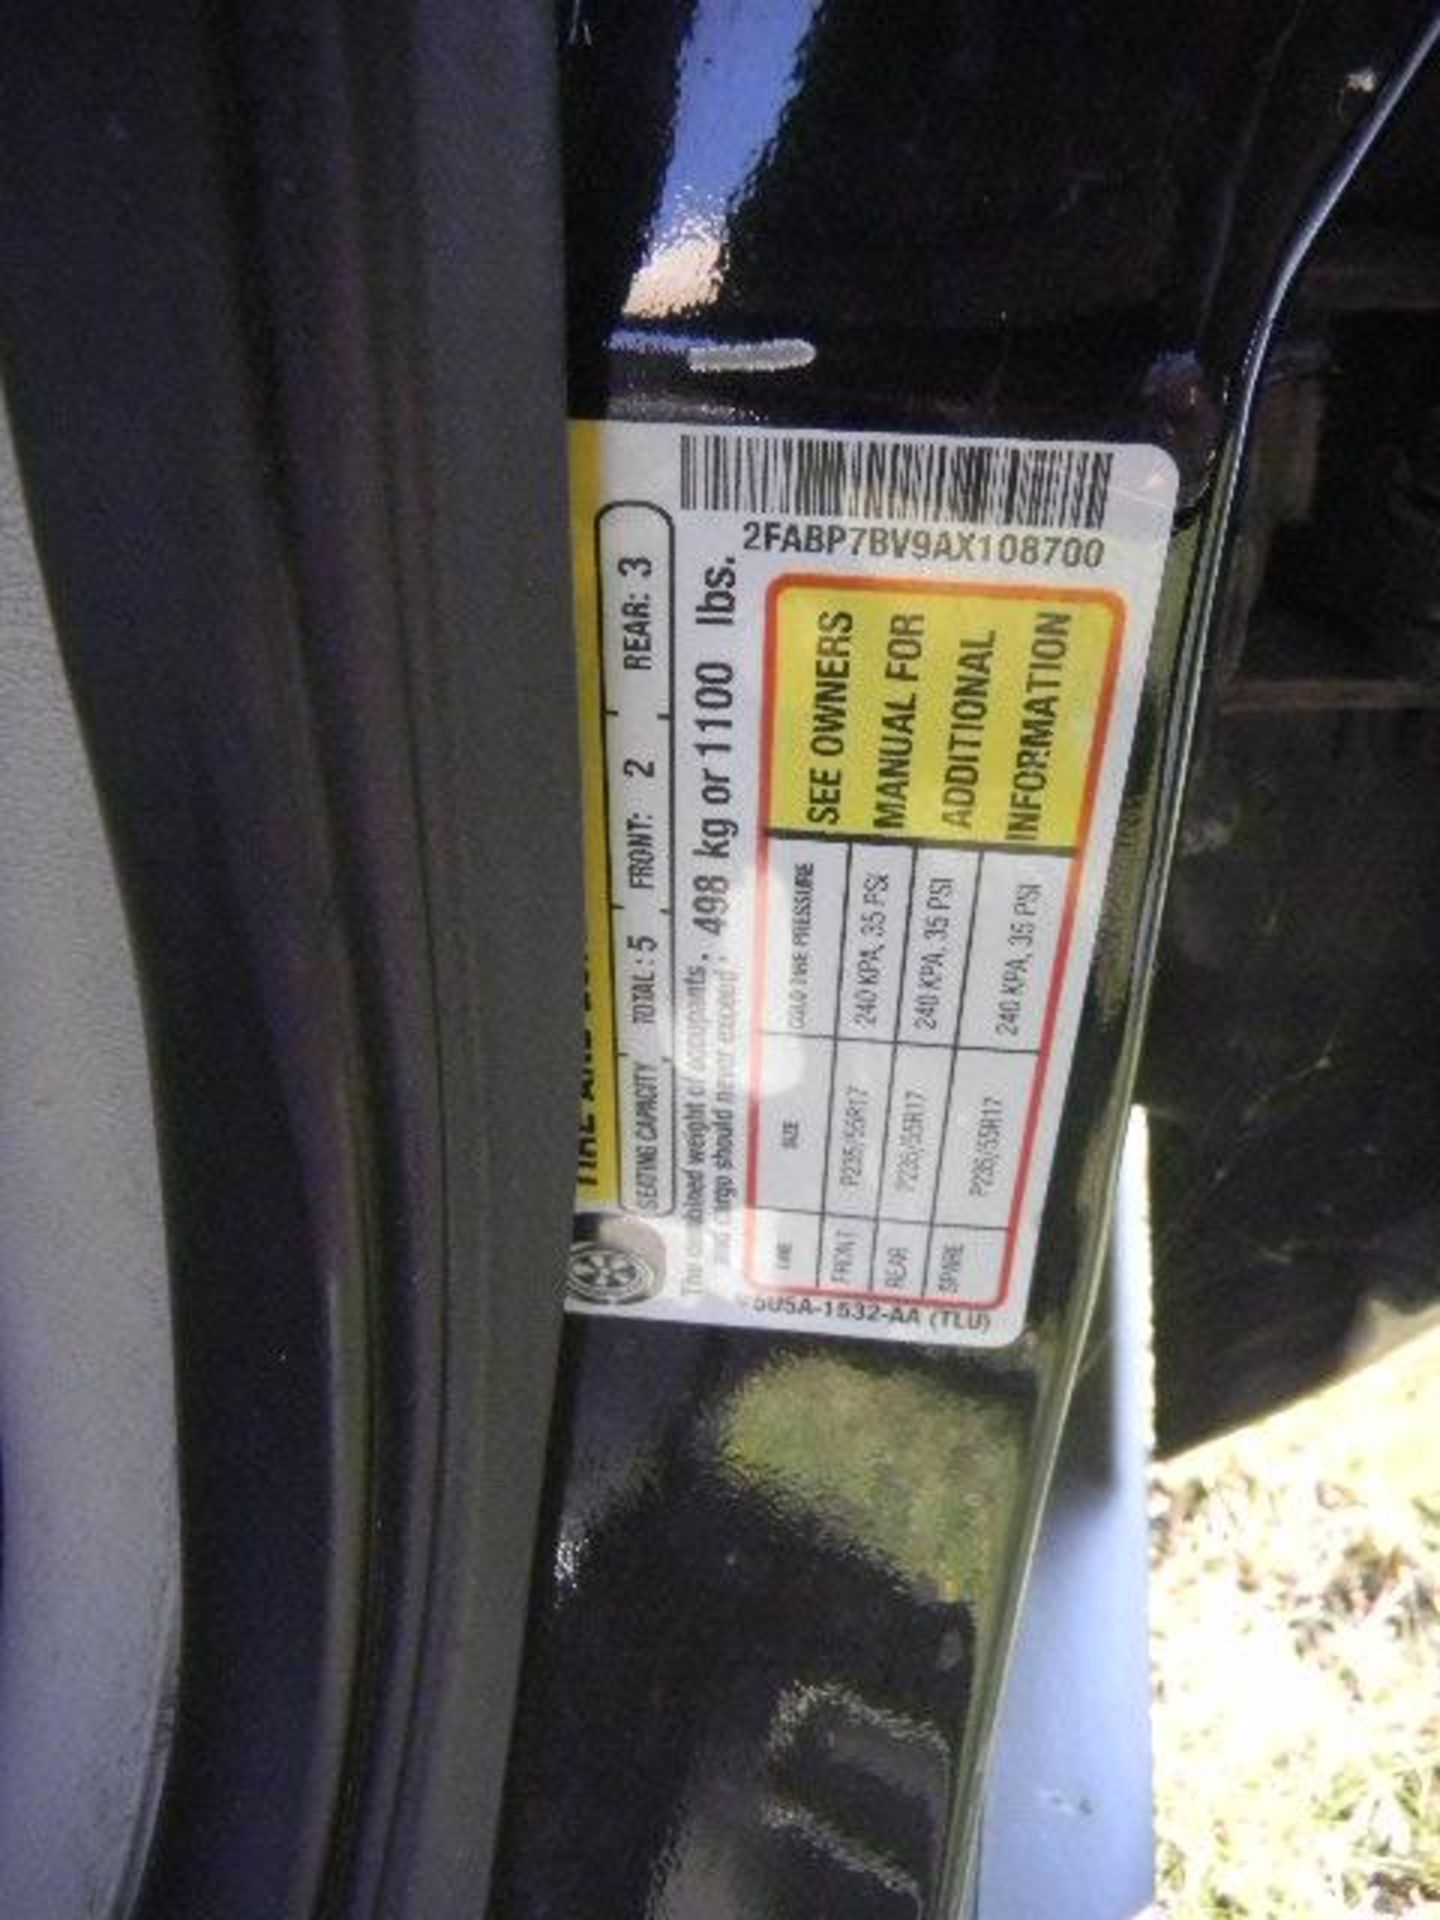 2010 Crown Vic Black/White Patrol Car - Asset I.D. #660 - Last of Vin (108700) - Image 7 of 7